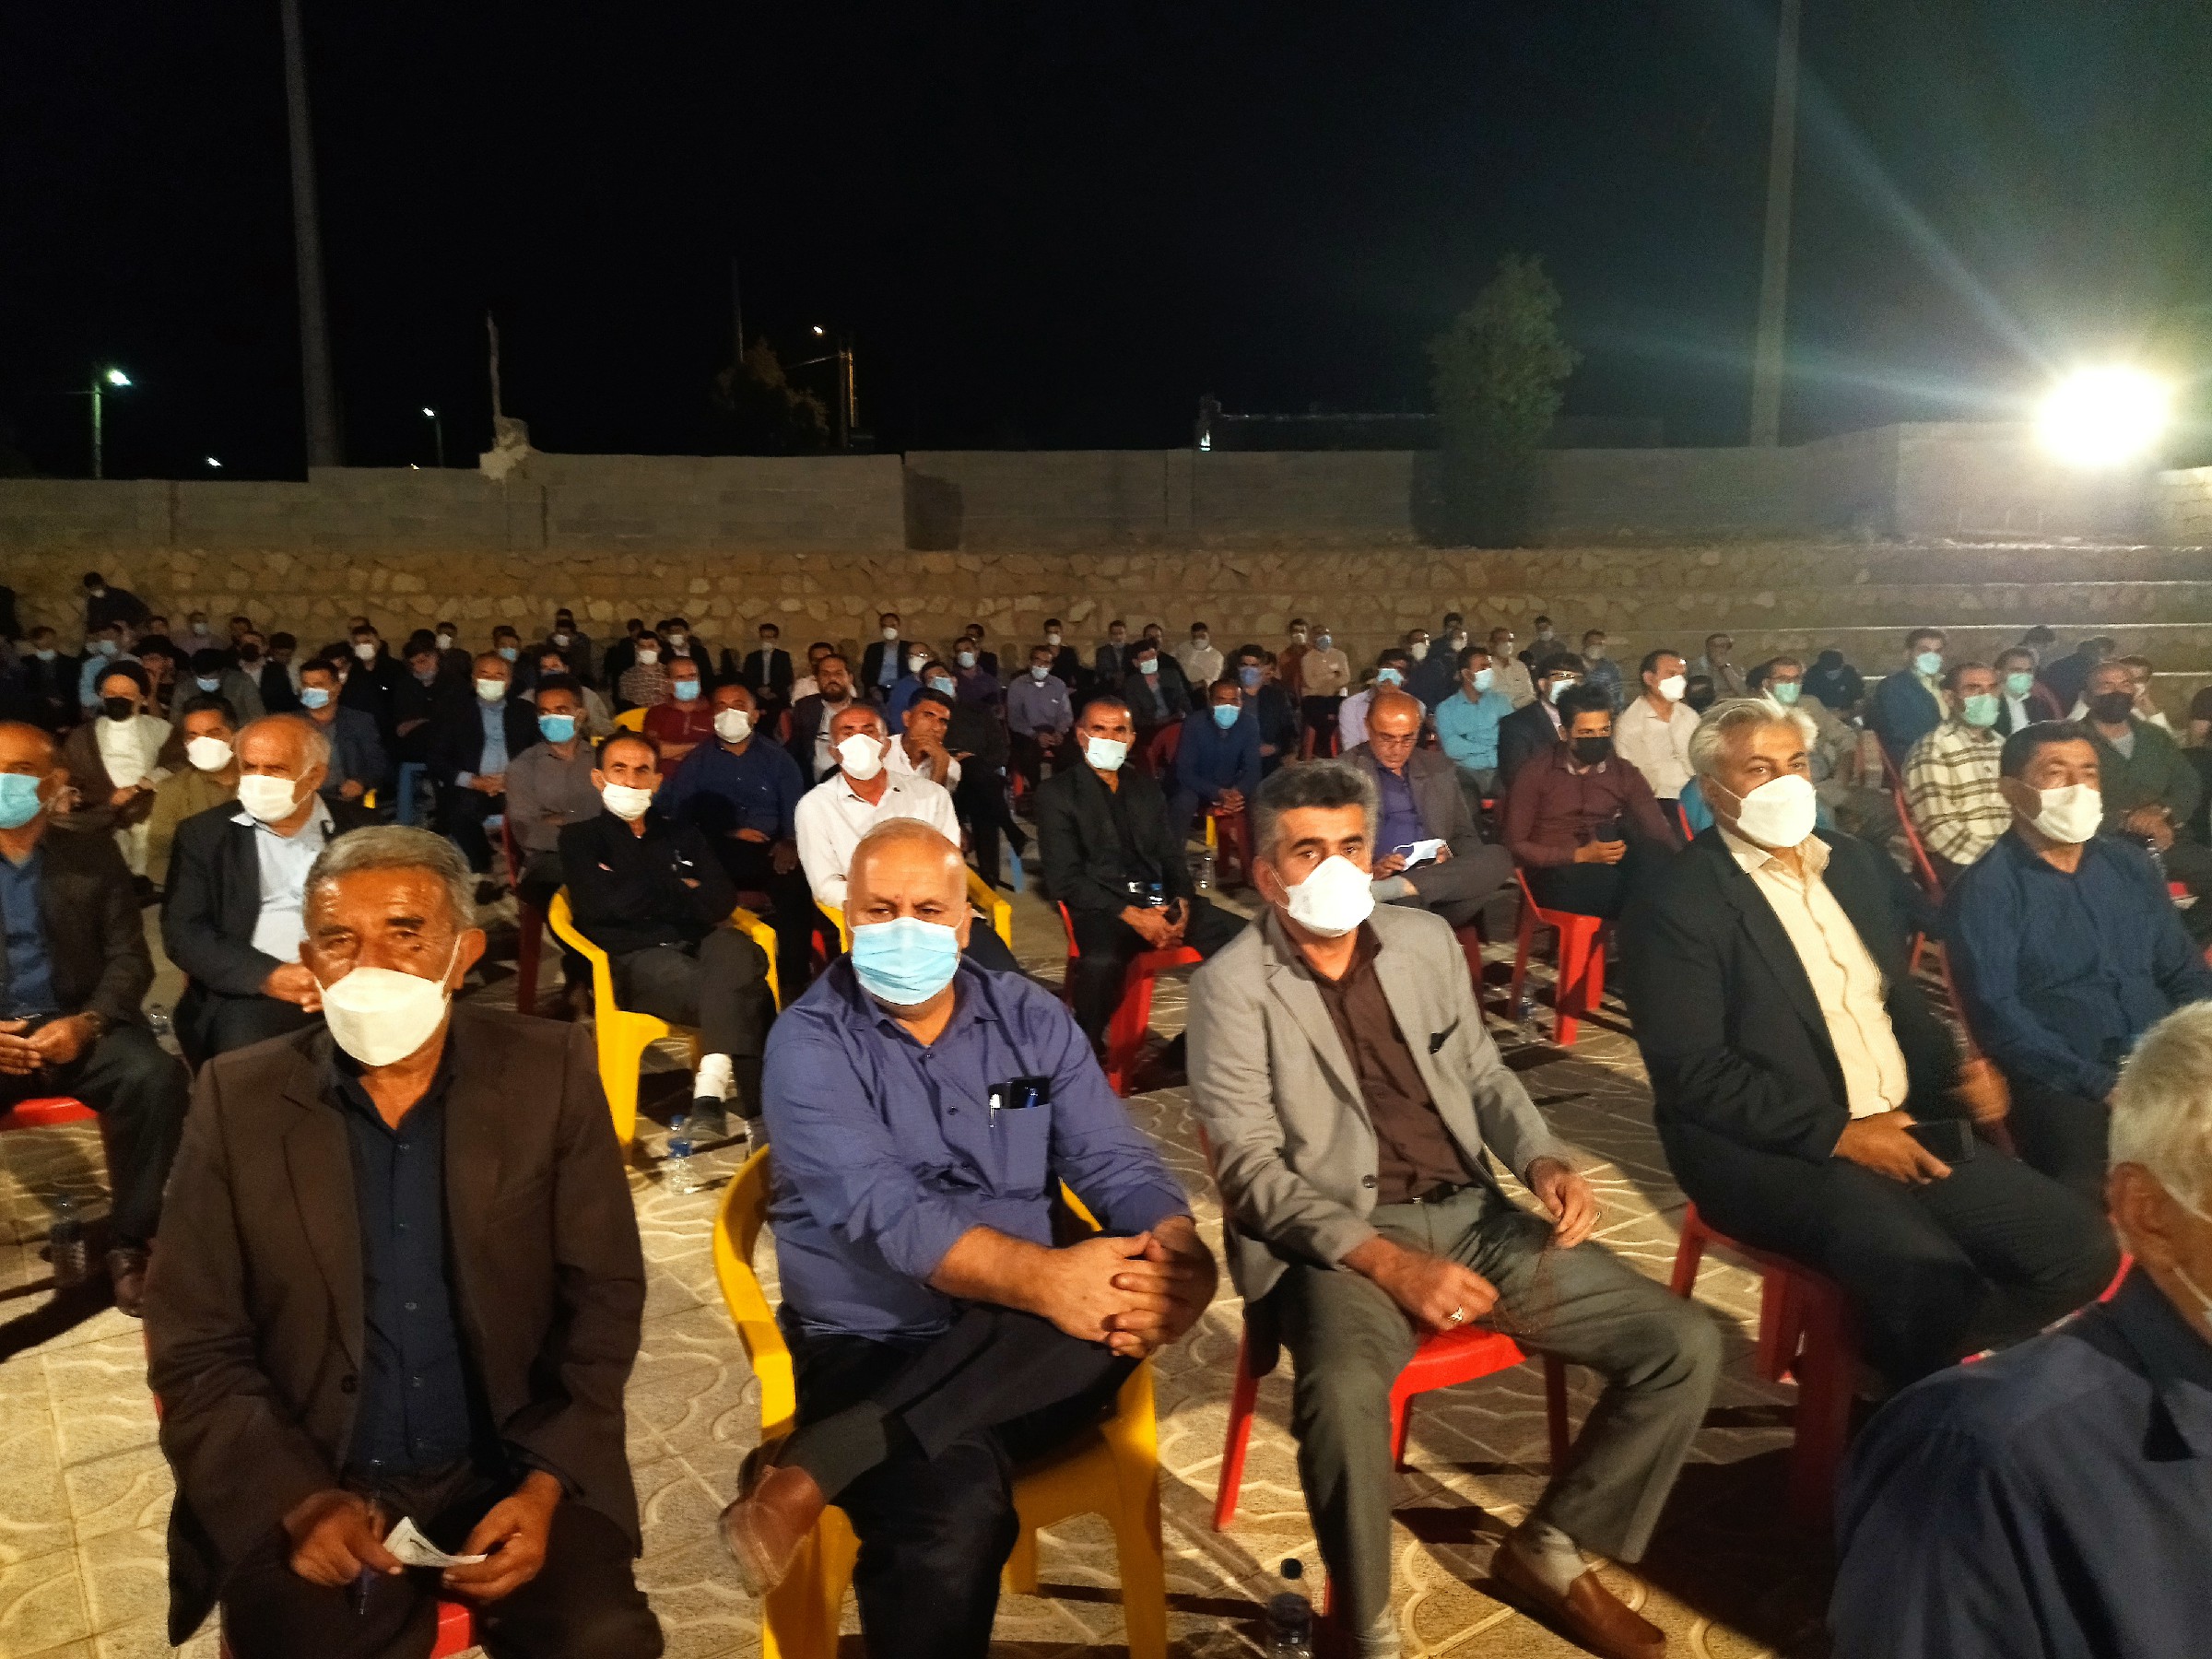 گزارش کامل از سفر یک روزه ی نماینده شهرستان های چهارگانه در مجلس شورای اسلامی به شهرستان بهمئی + تصاویر